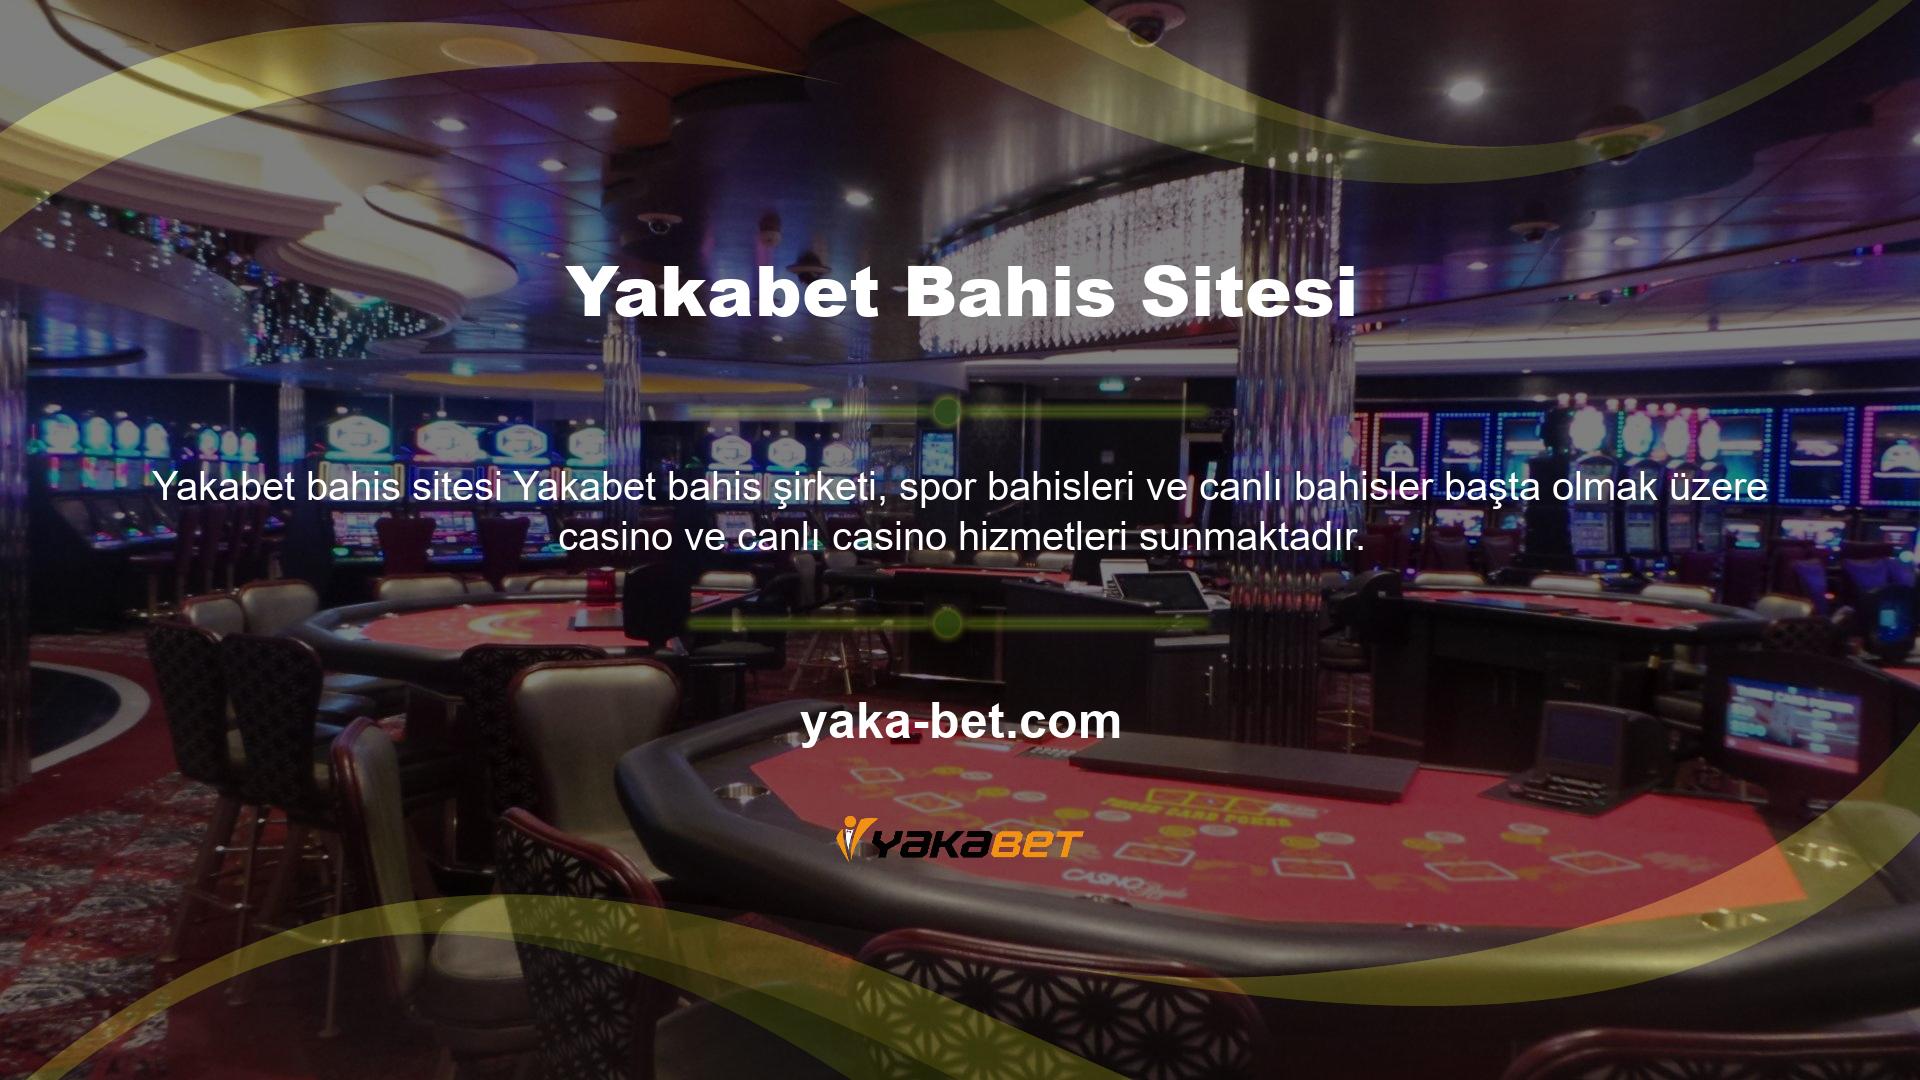 Casino şirketinin çoğu alanda hizmet sunması ve bu alanlarda gerçekten kaliteli hizmetler sunması, onu Türk casino pazarında lider kılmaktadır